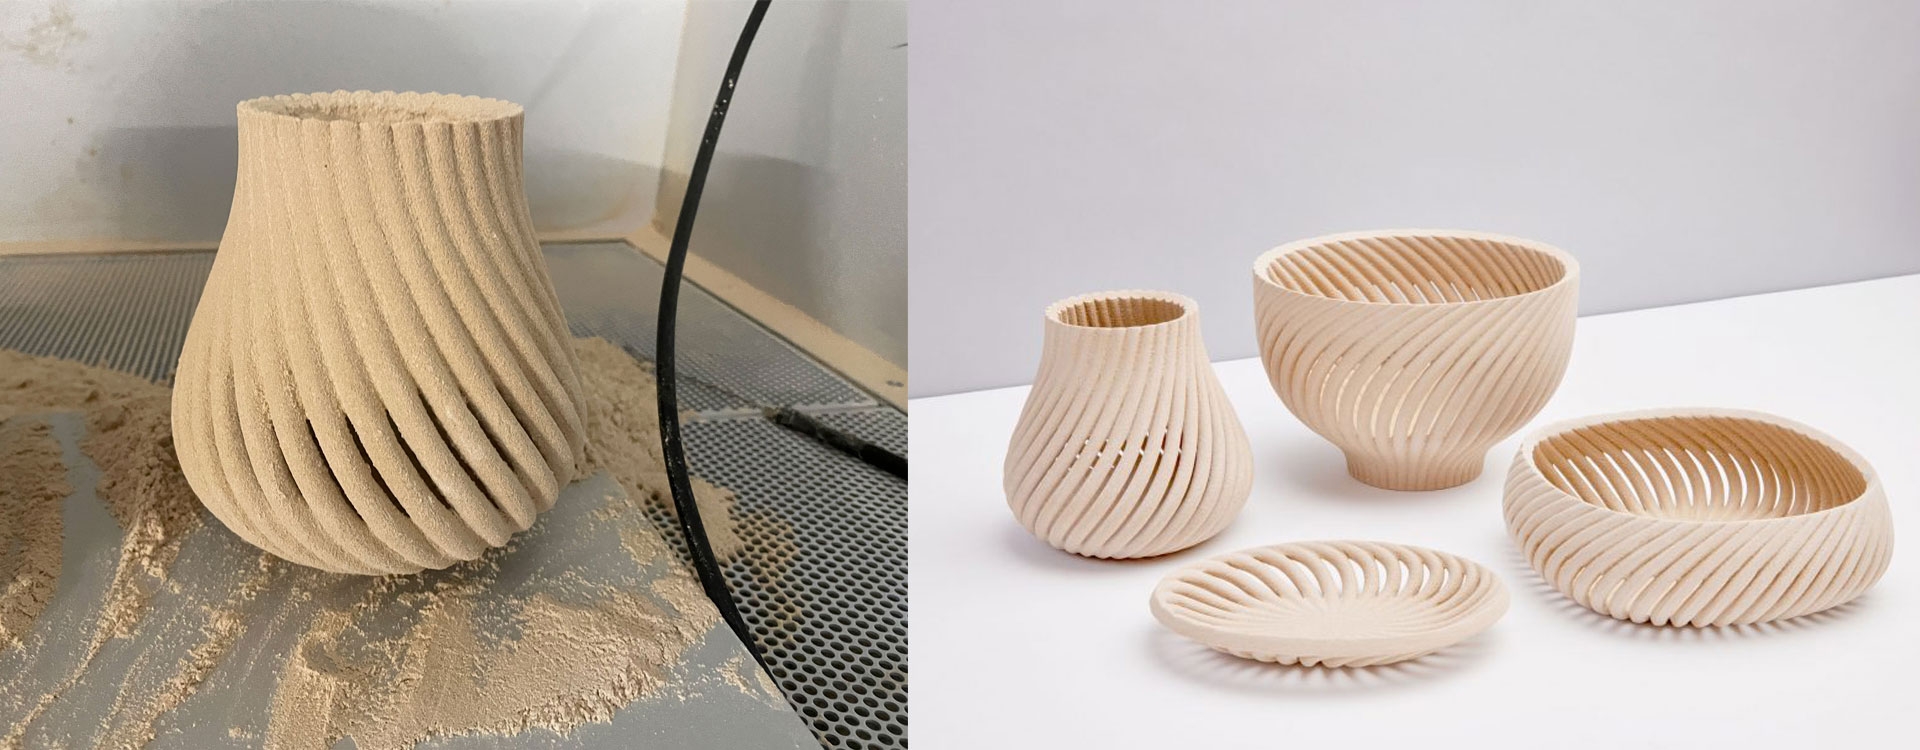 Ів Бехар виготовив предмети домашнього вжитку з перероблених відходів з допомогою 3D друку.